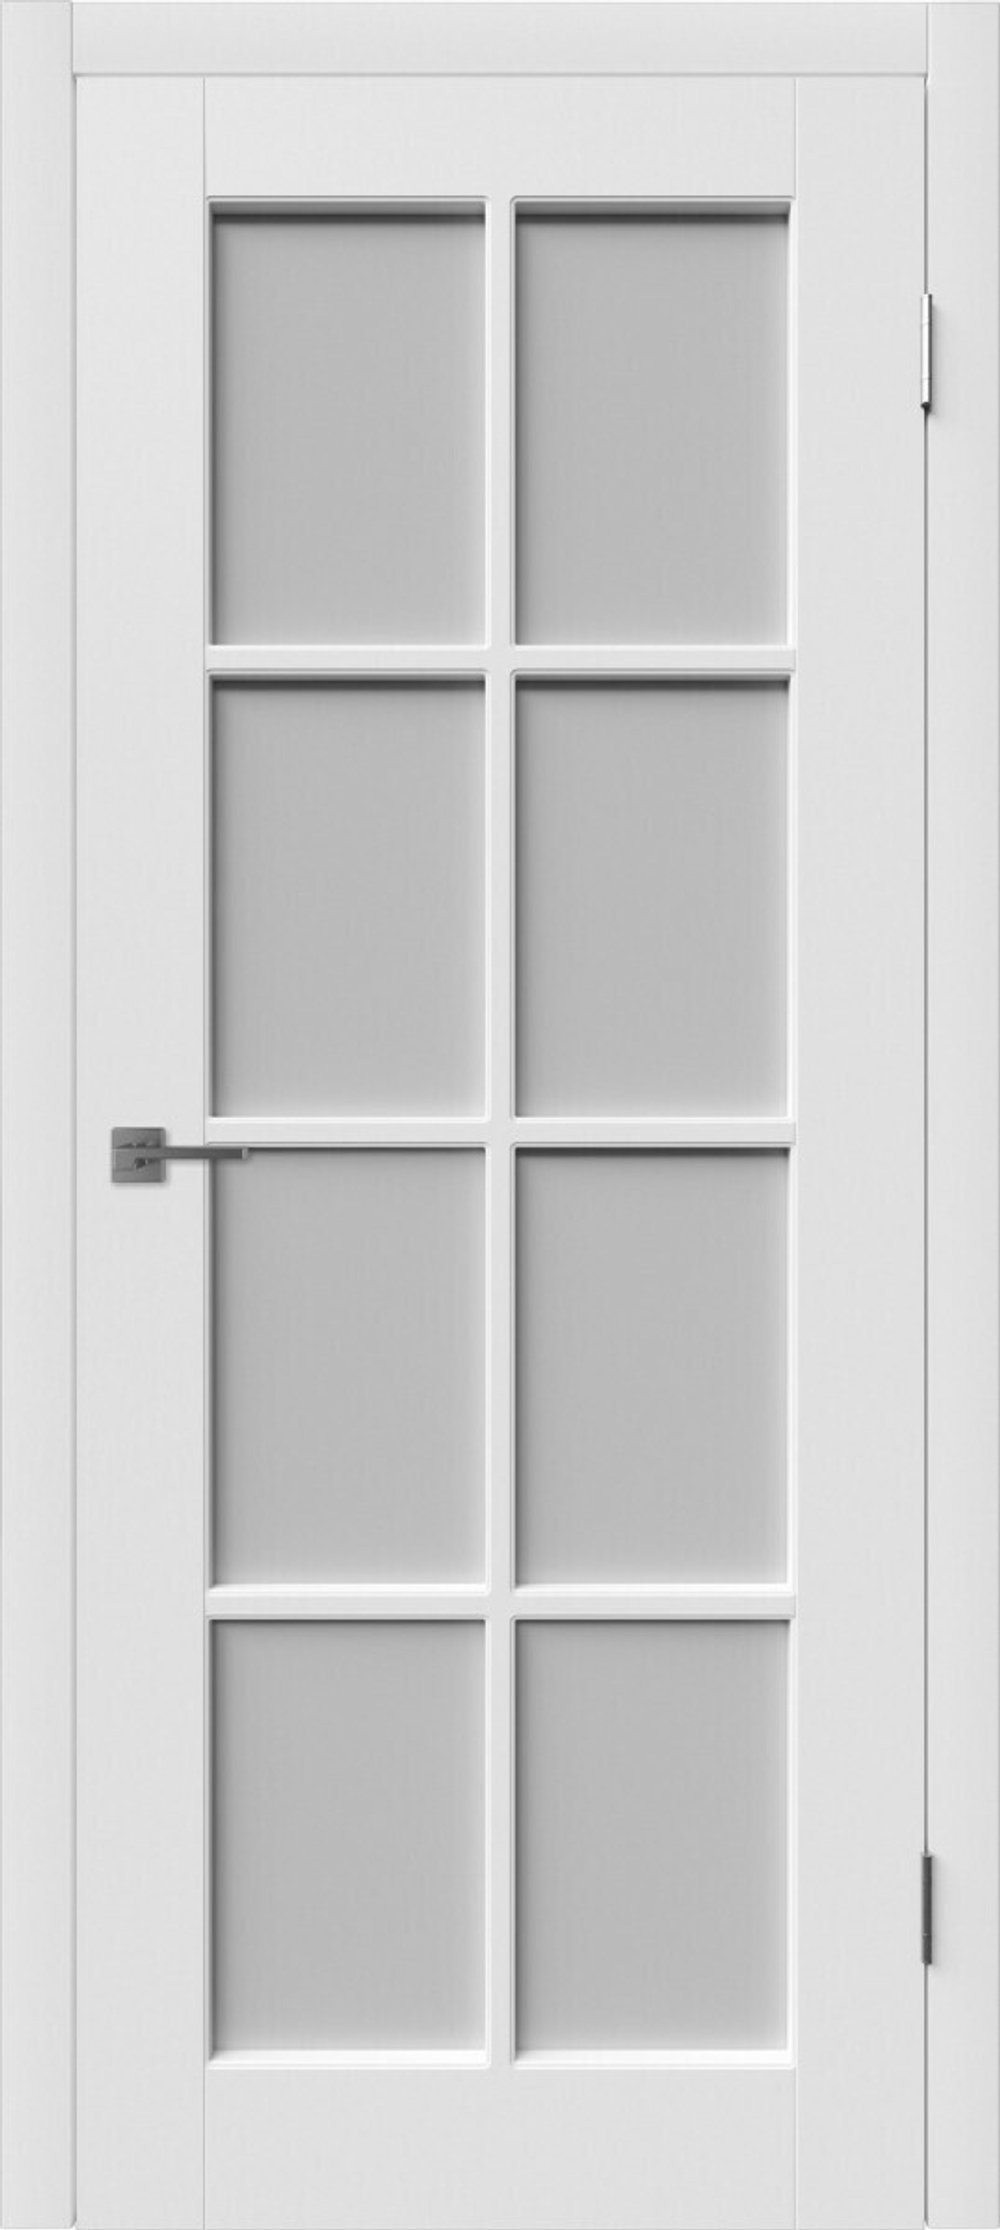 Двери межкомнатные эмалированные Порта (20ДГО)